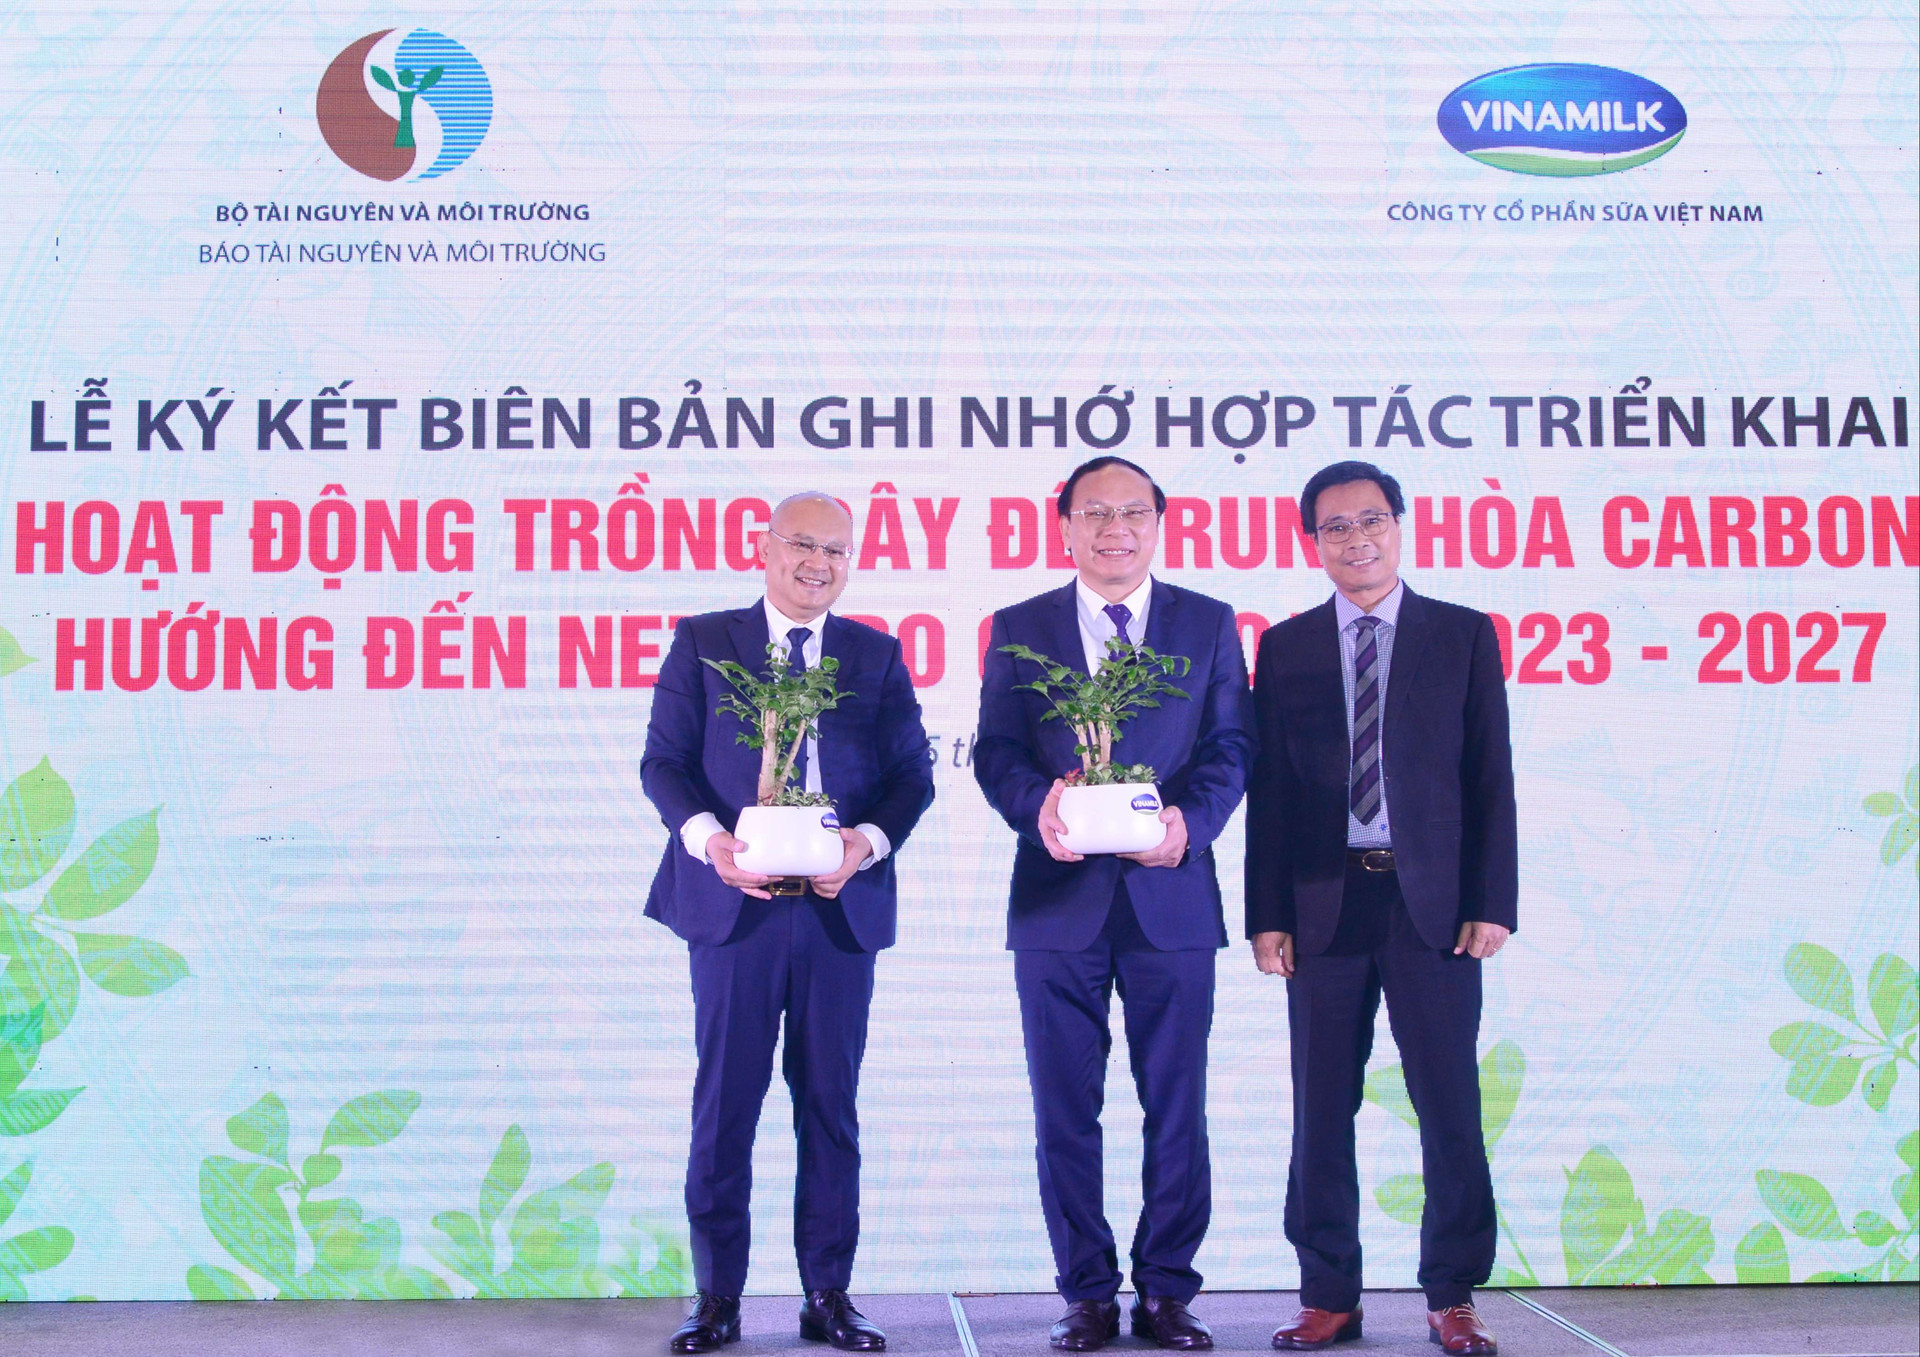 Tiên phong thực hiện cam kết của chính phủ về Net Zero 2020, Vinamilk dành 15 tỷ đồng trồng cây trung hòa carbon - Ảnh 5.